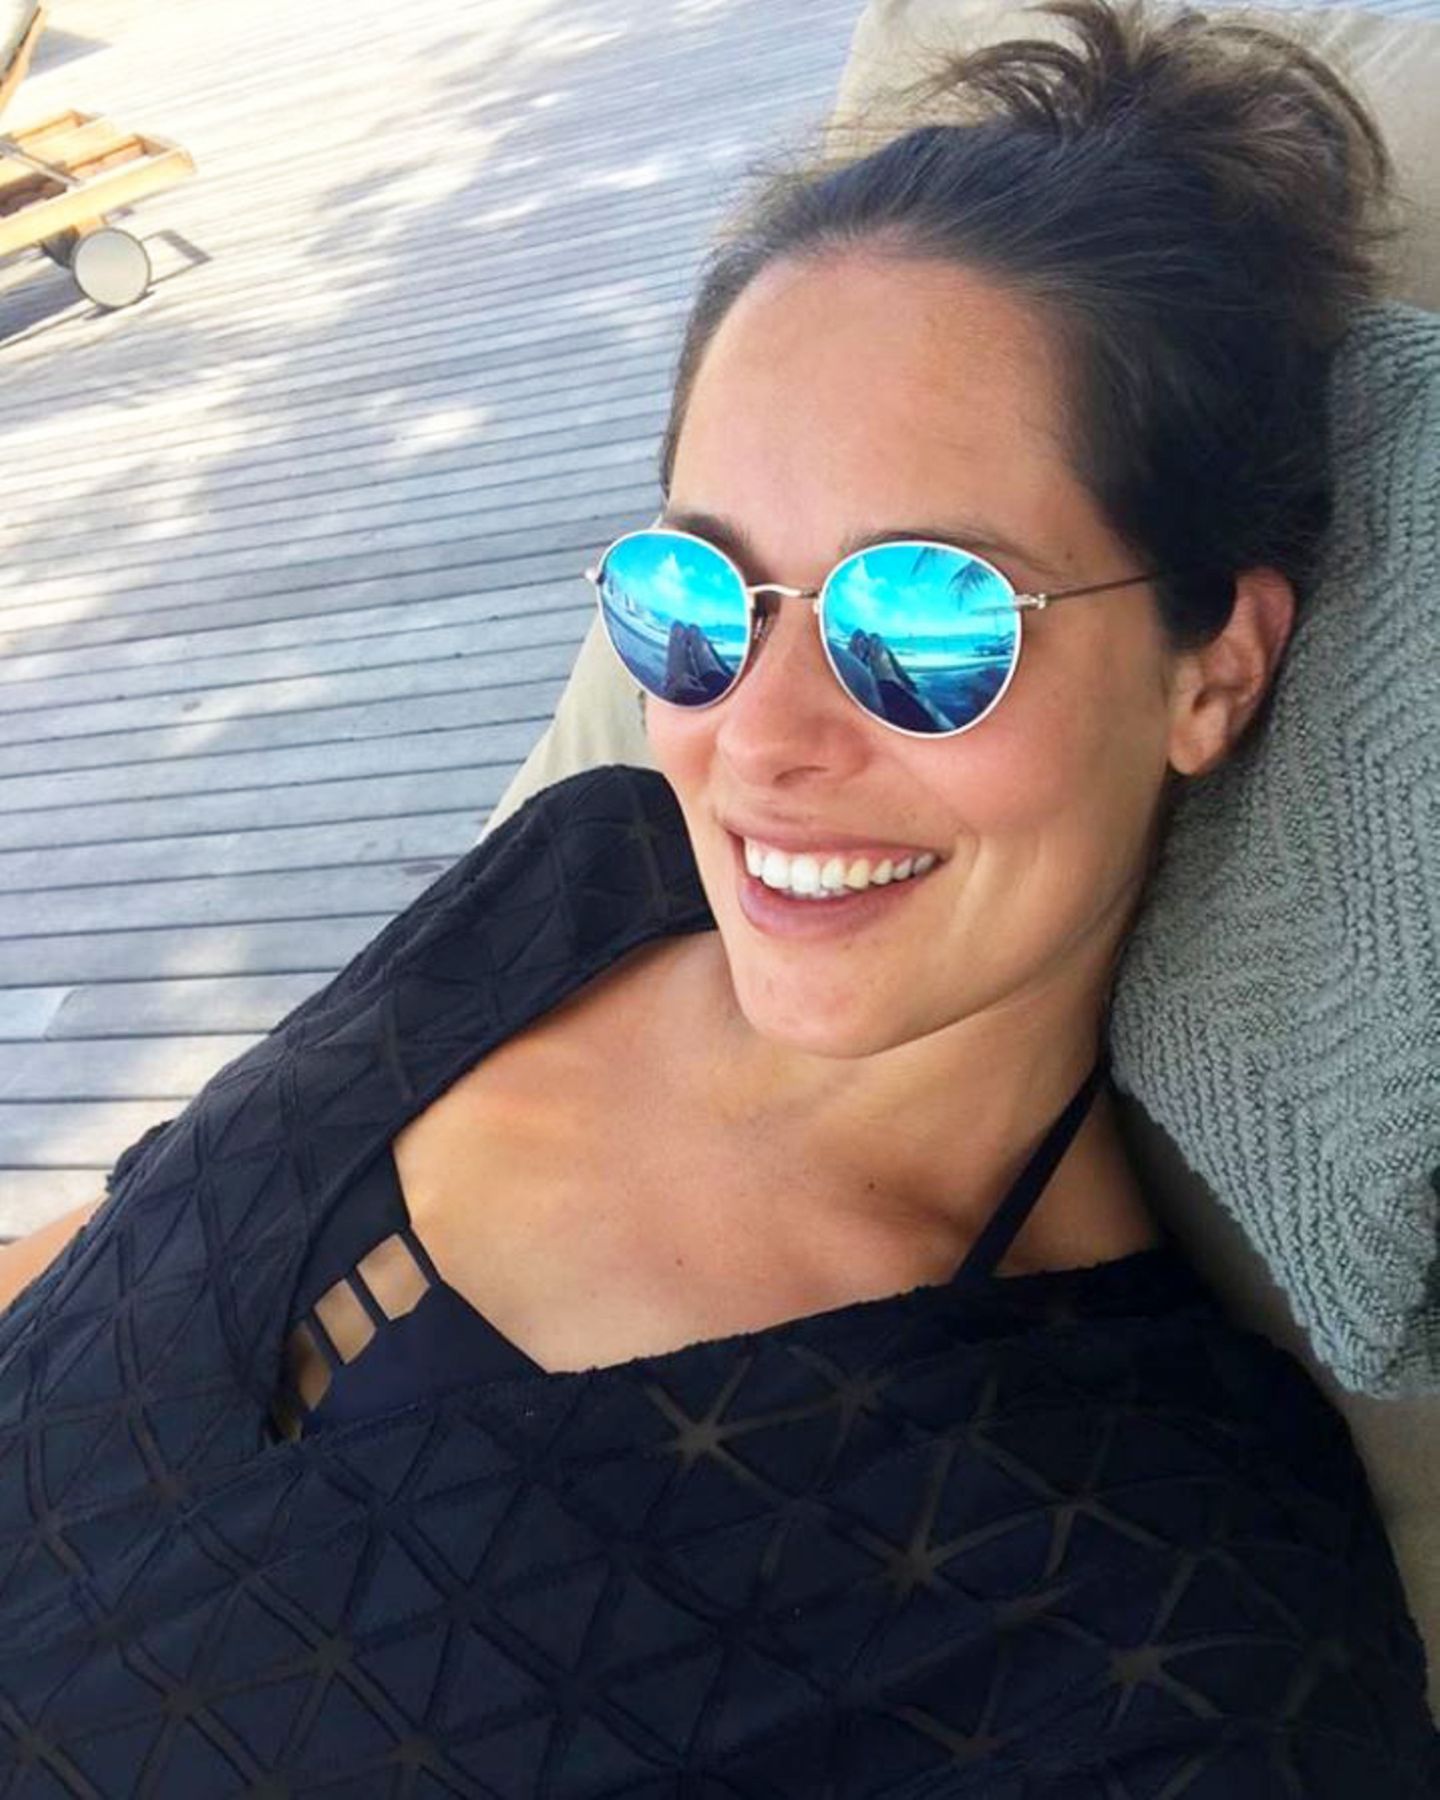 Mit diesem Schnappschuss wünscht Ana Ivanovic ihren Instagram-Fans einen schönen Sonntag. Die werdende Mama strahlt vor Glück. In ihrer Sonnenbrille spiegelt sich zudem ein süßes Detail: Während Ana mit der einen Hand ein Selfie knipst, streichelt sie mit der anderen zärtlich ihren Babybauch. 